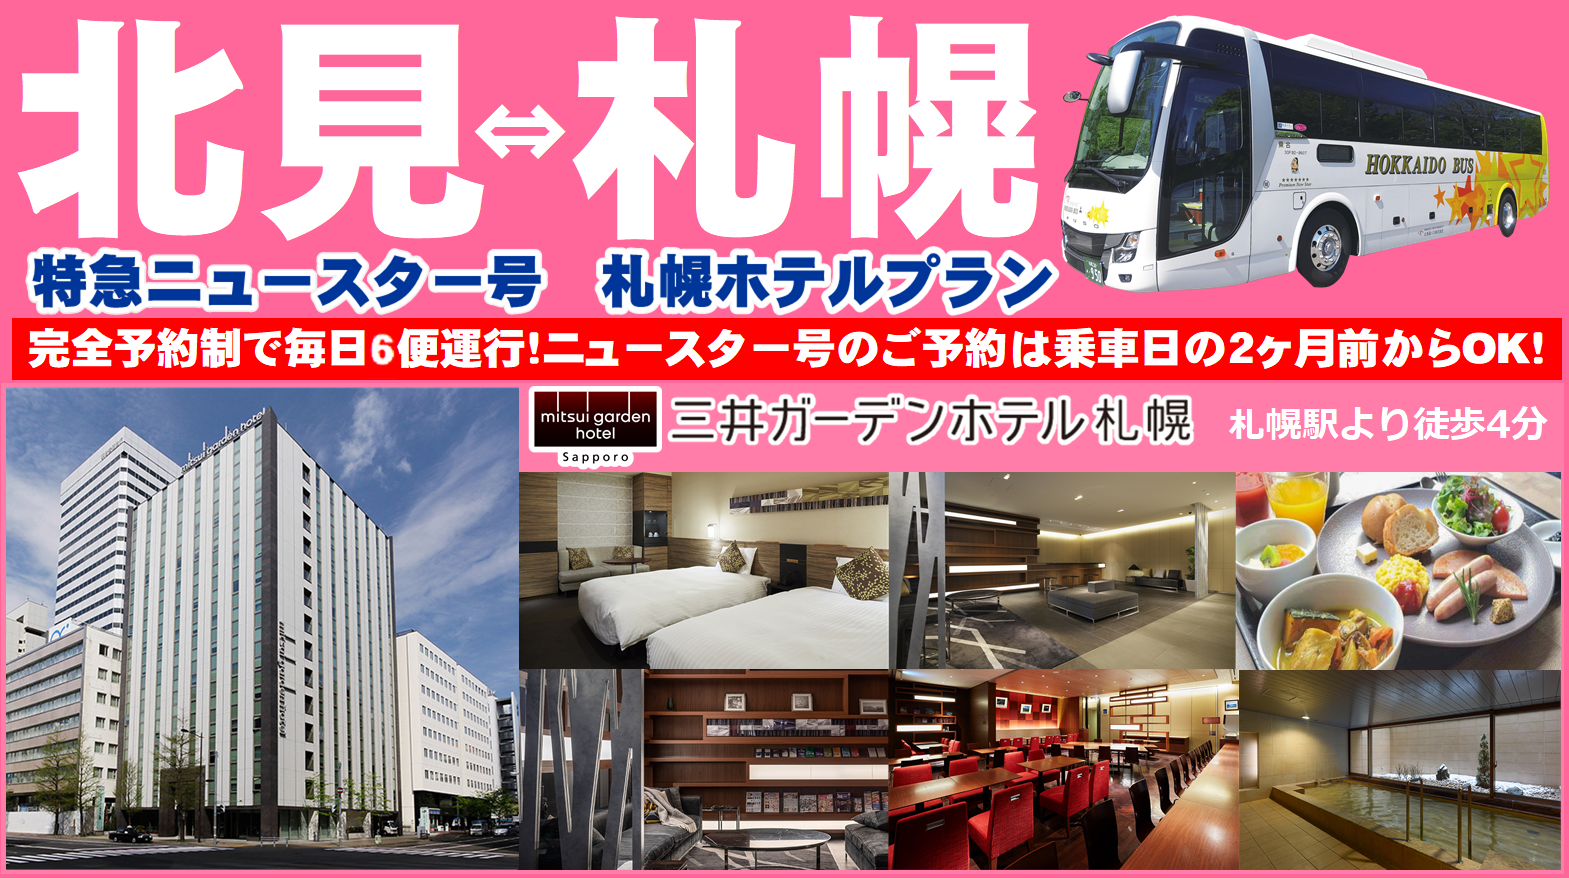 北見特急ニュースター号 札幌ホテルプラン 三井ガーデンホテル札幌